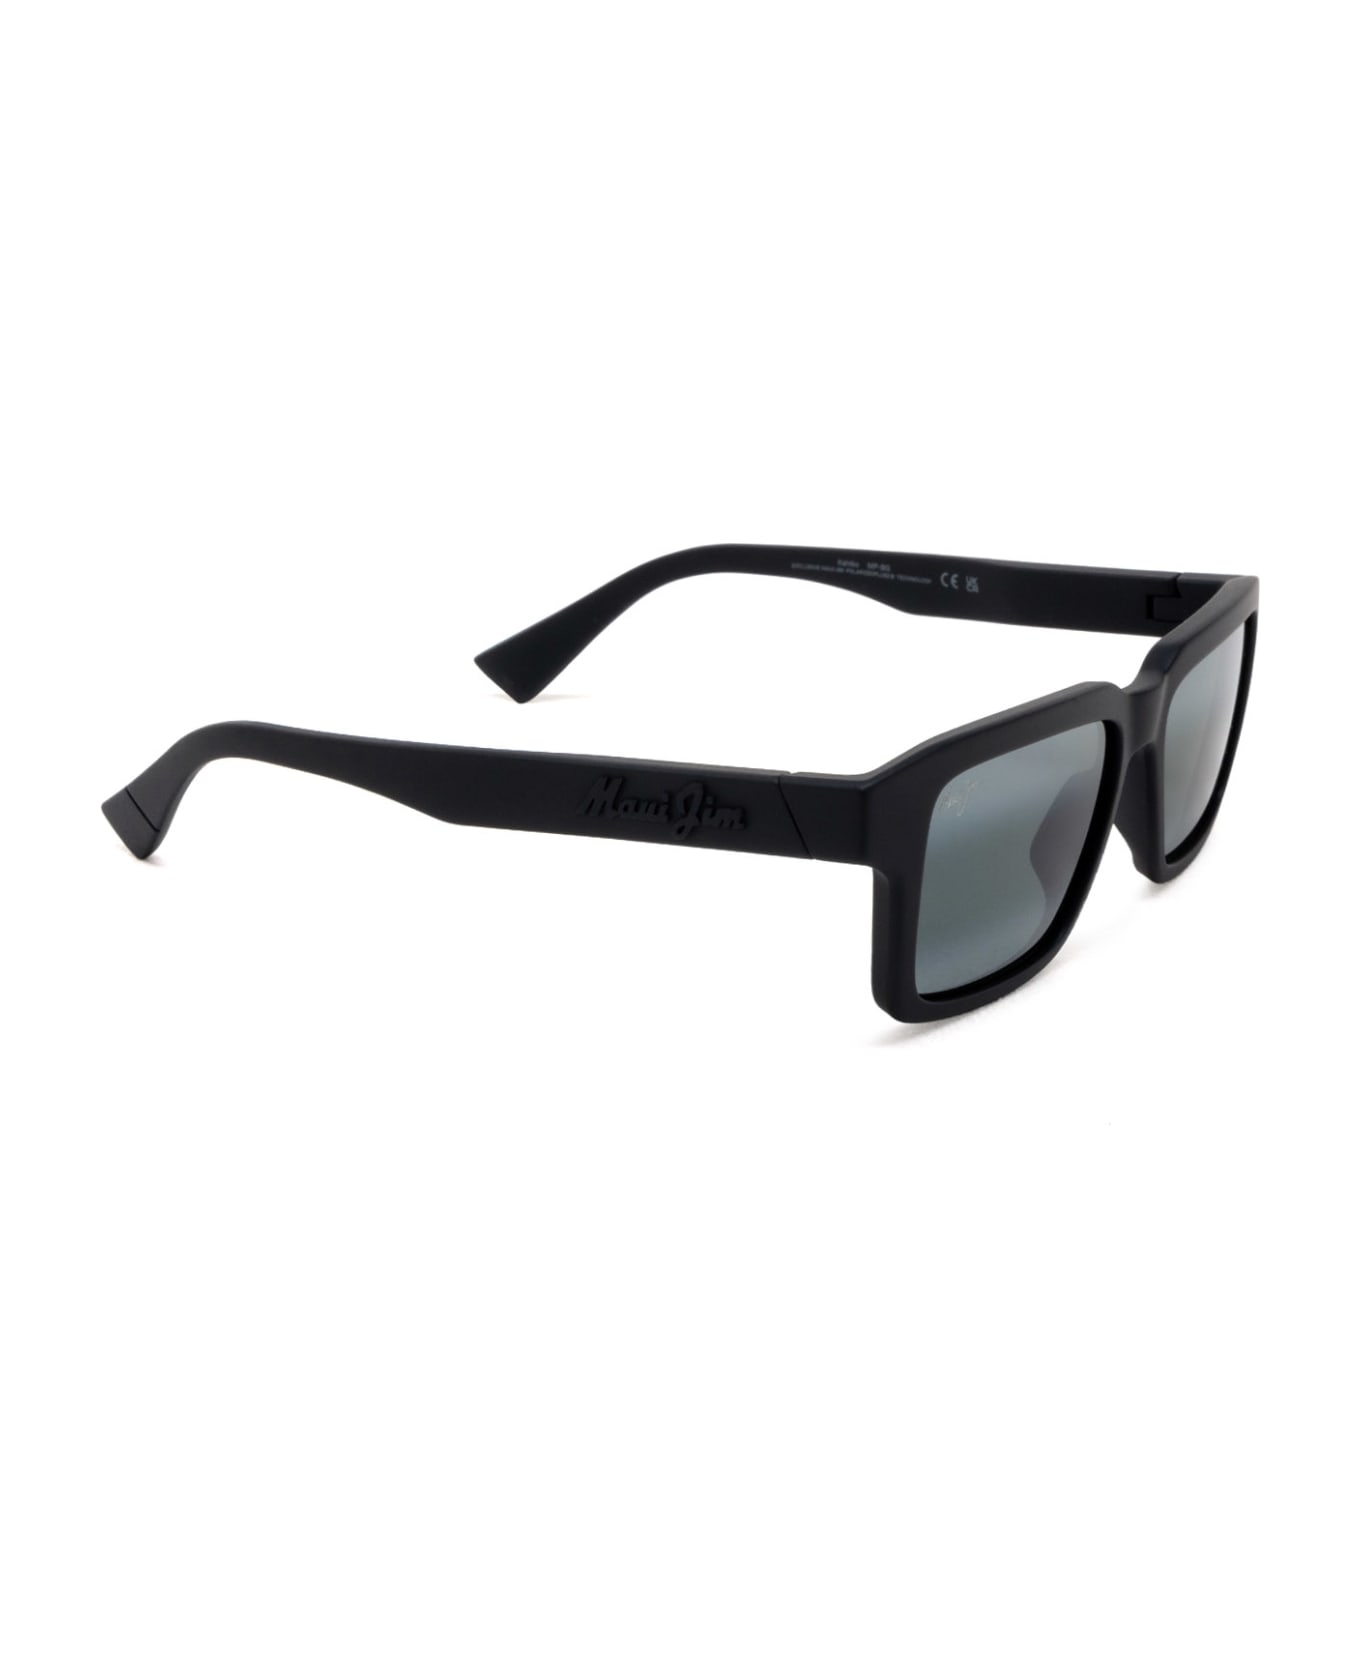 Maui Jim Mj635 Matte Black Sunglasses - Matte Black